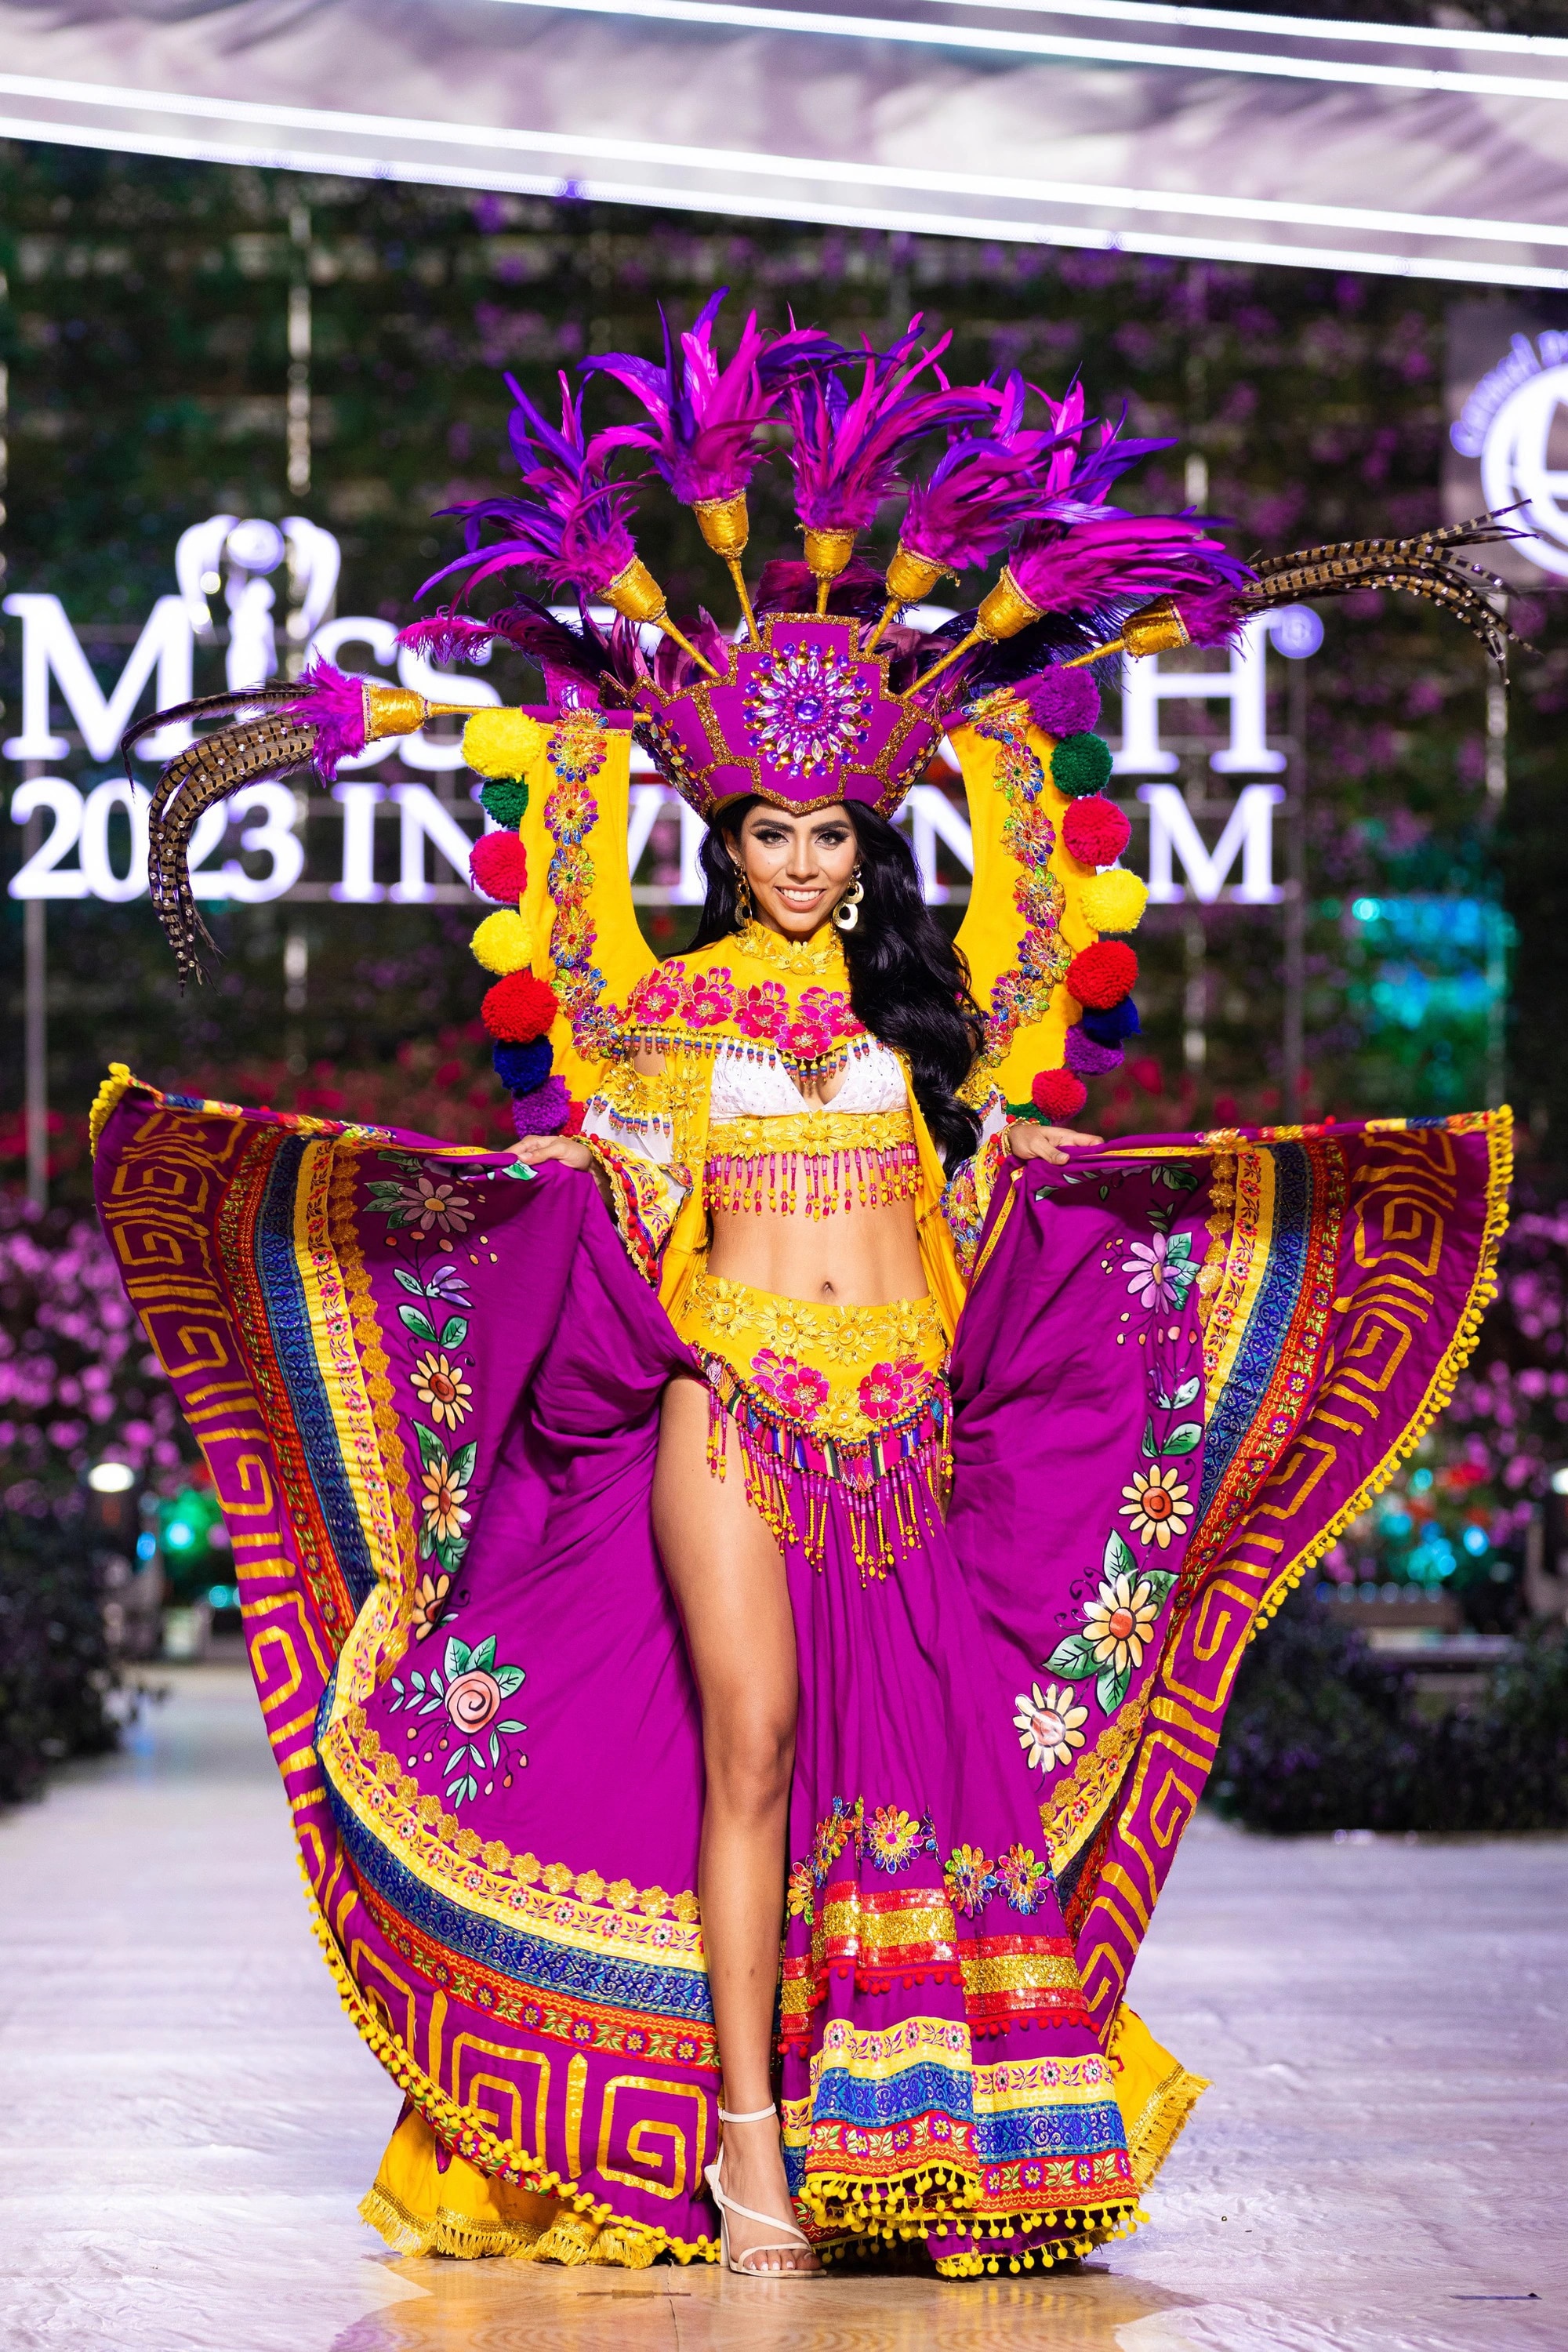 Bán kết Miss Earth 2023 màn trình Trang phục Dân tộc bùng nổ hình ảnh cỏ hoa, muông thú - Ảnh 32.